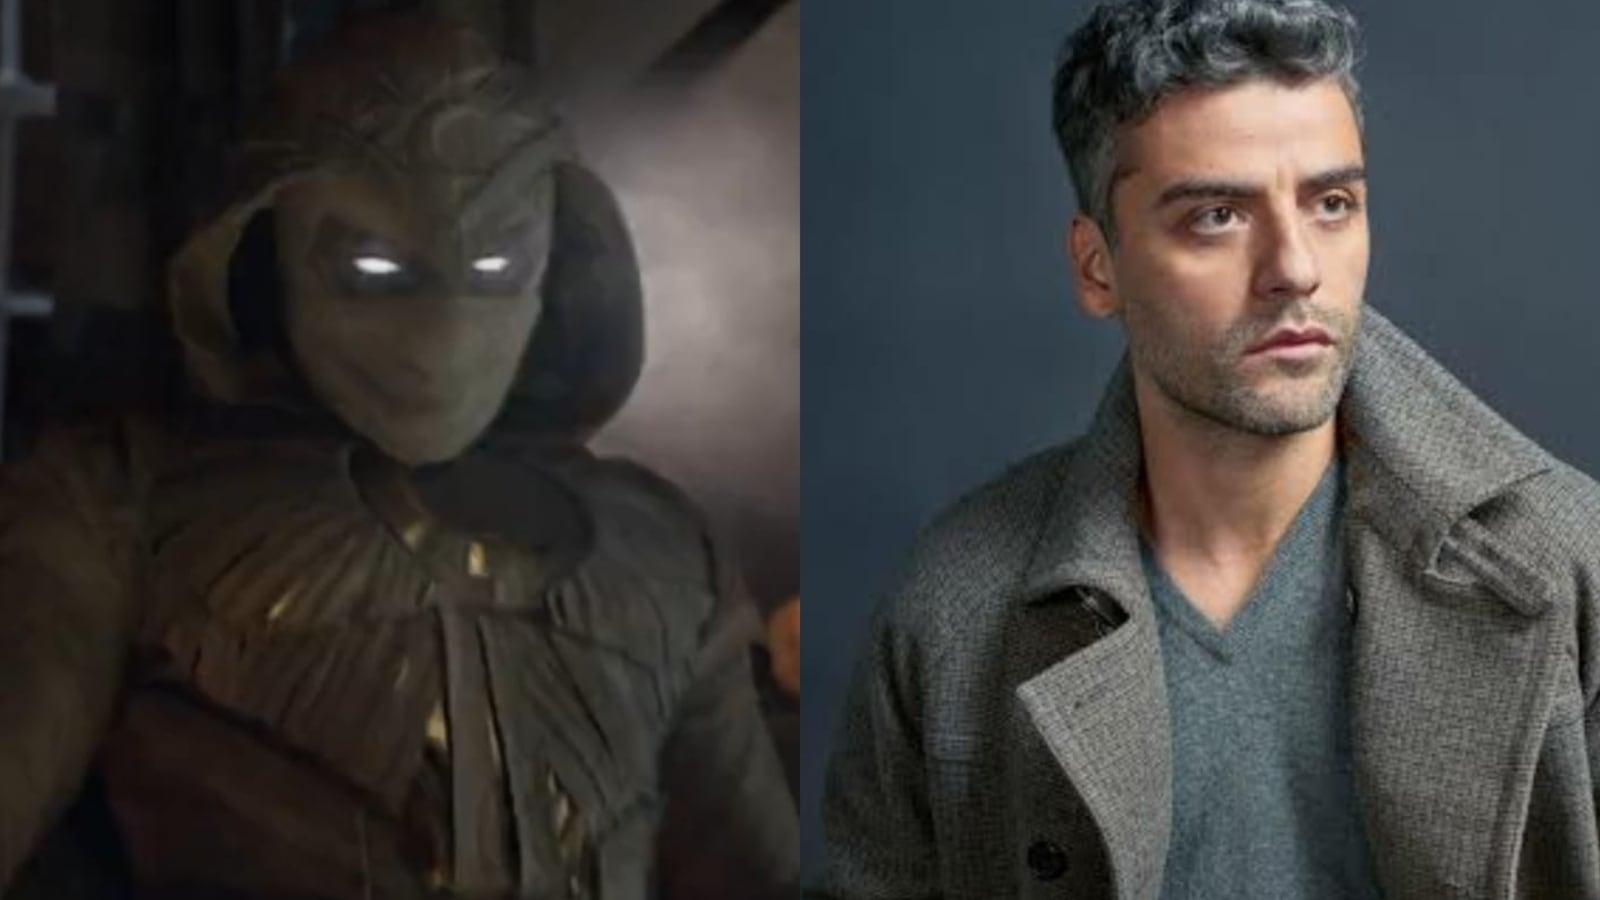 Who is Moon Knight, Oscar Isaac's New Marvel Superhero?